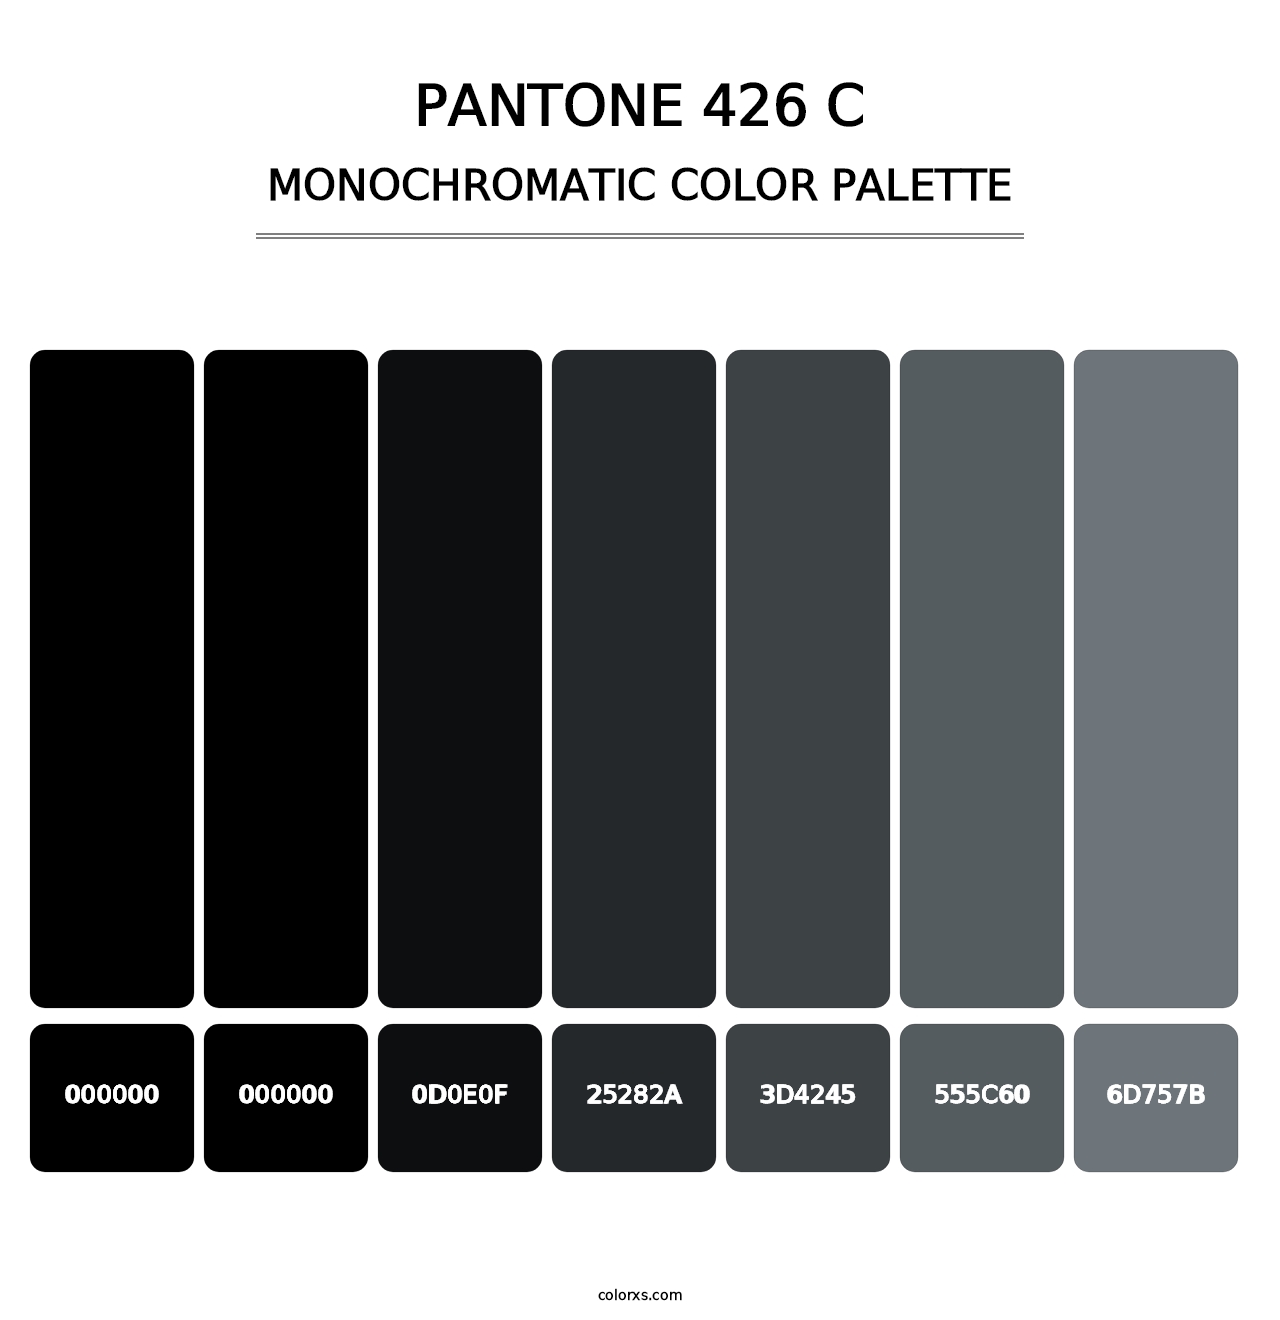 PANTONE 426 C - Monochromatic Color Palette